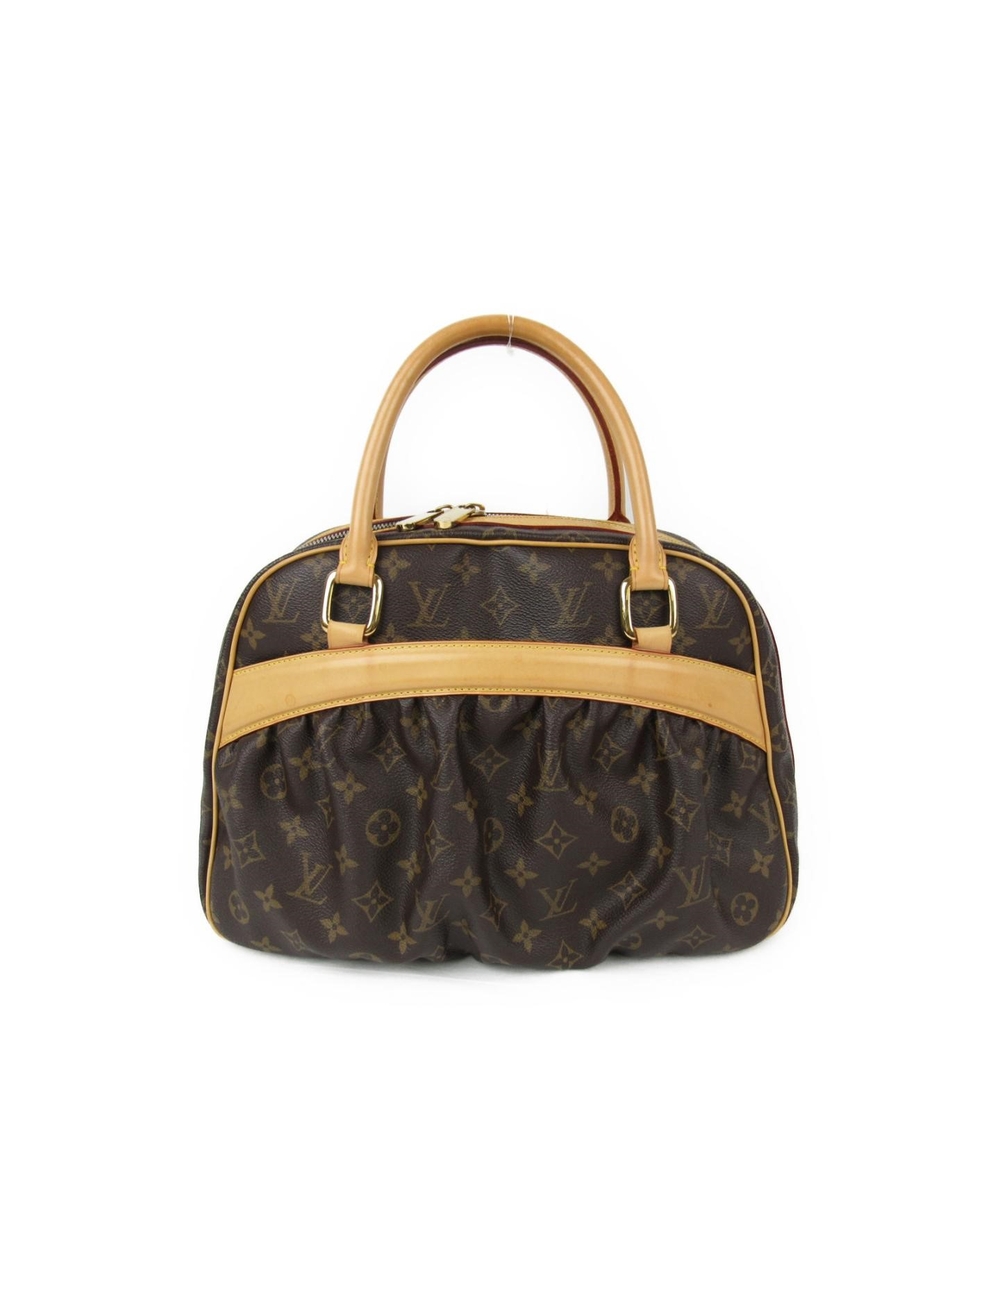 Designer Handbags Series: Louis Vuitton - Alberts Pawn